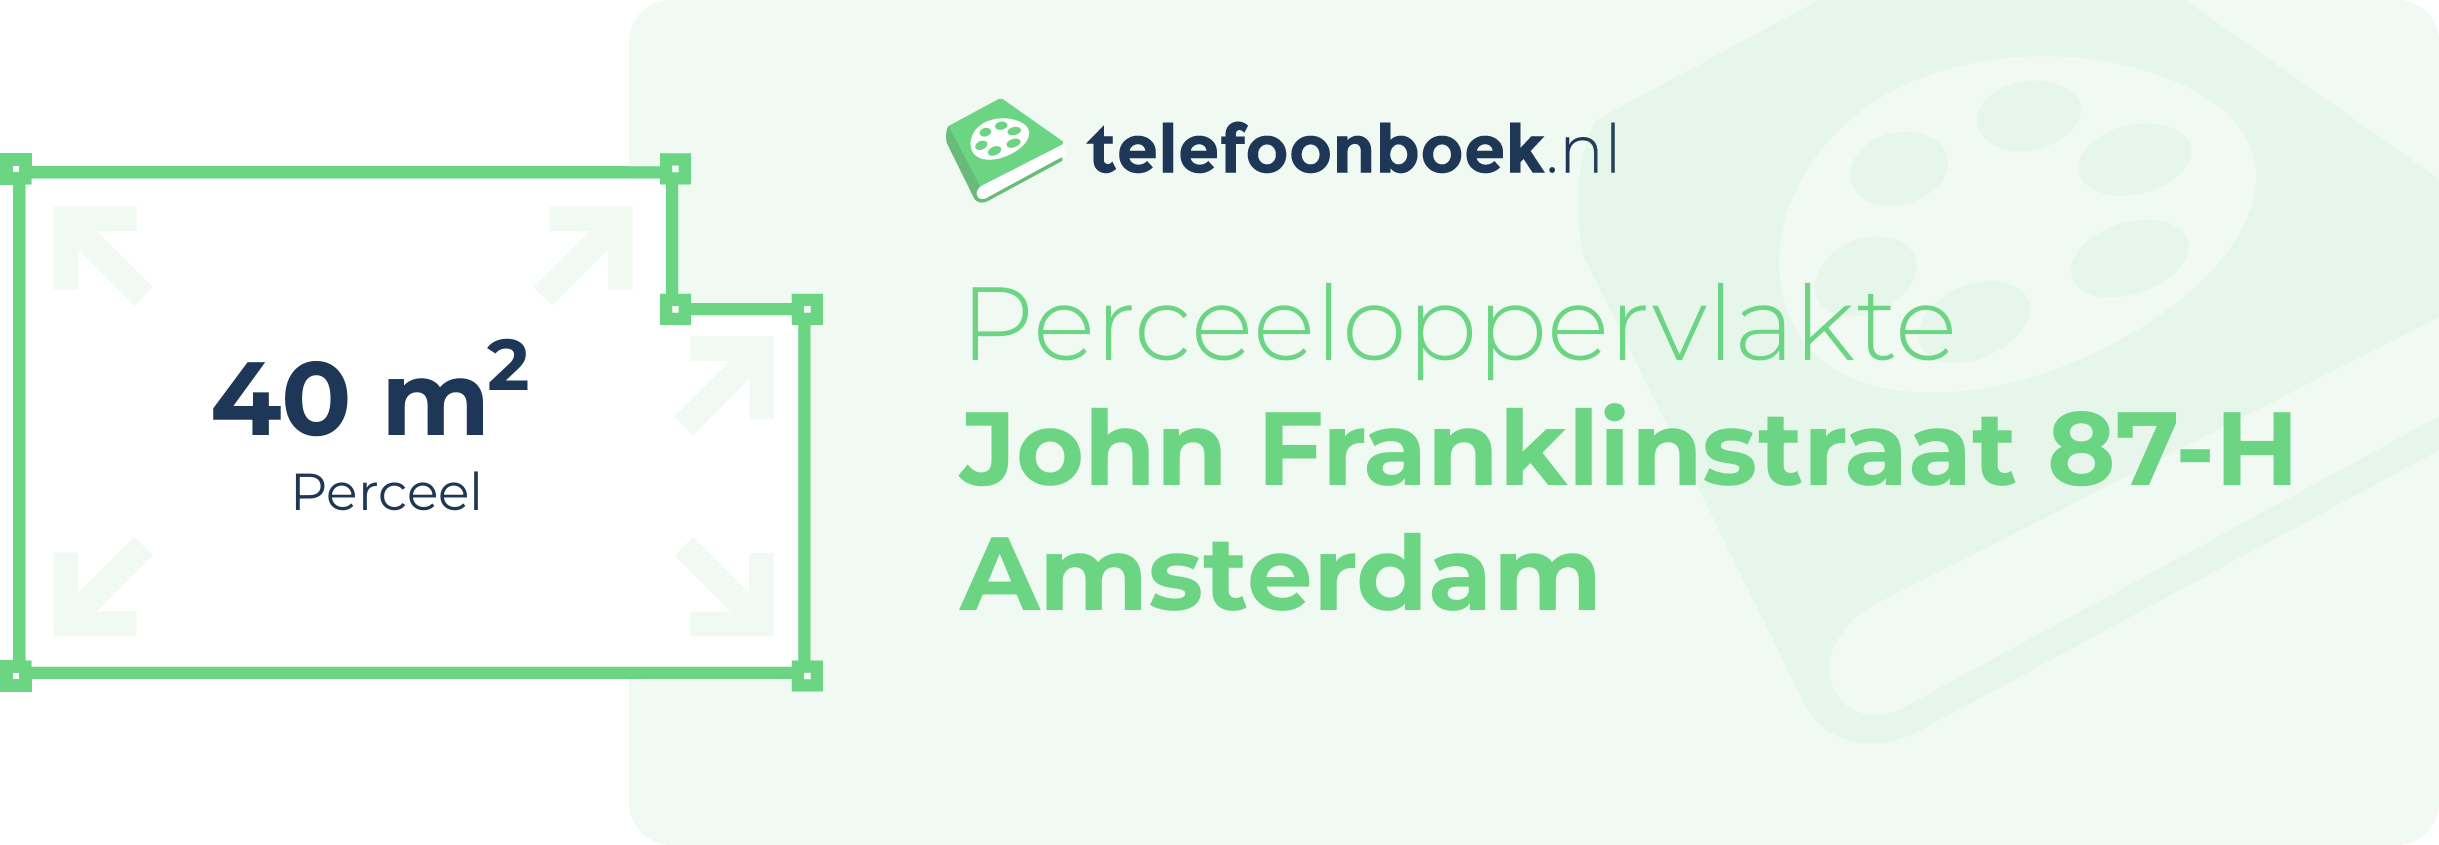 Perceeloppervlakte John Franklinstraat 87-H Amsterdam